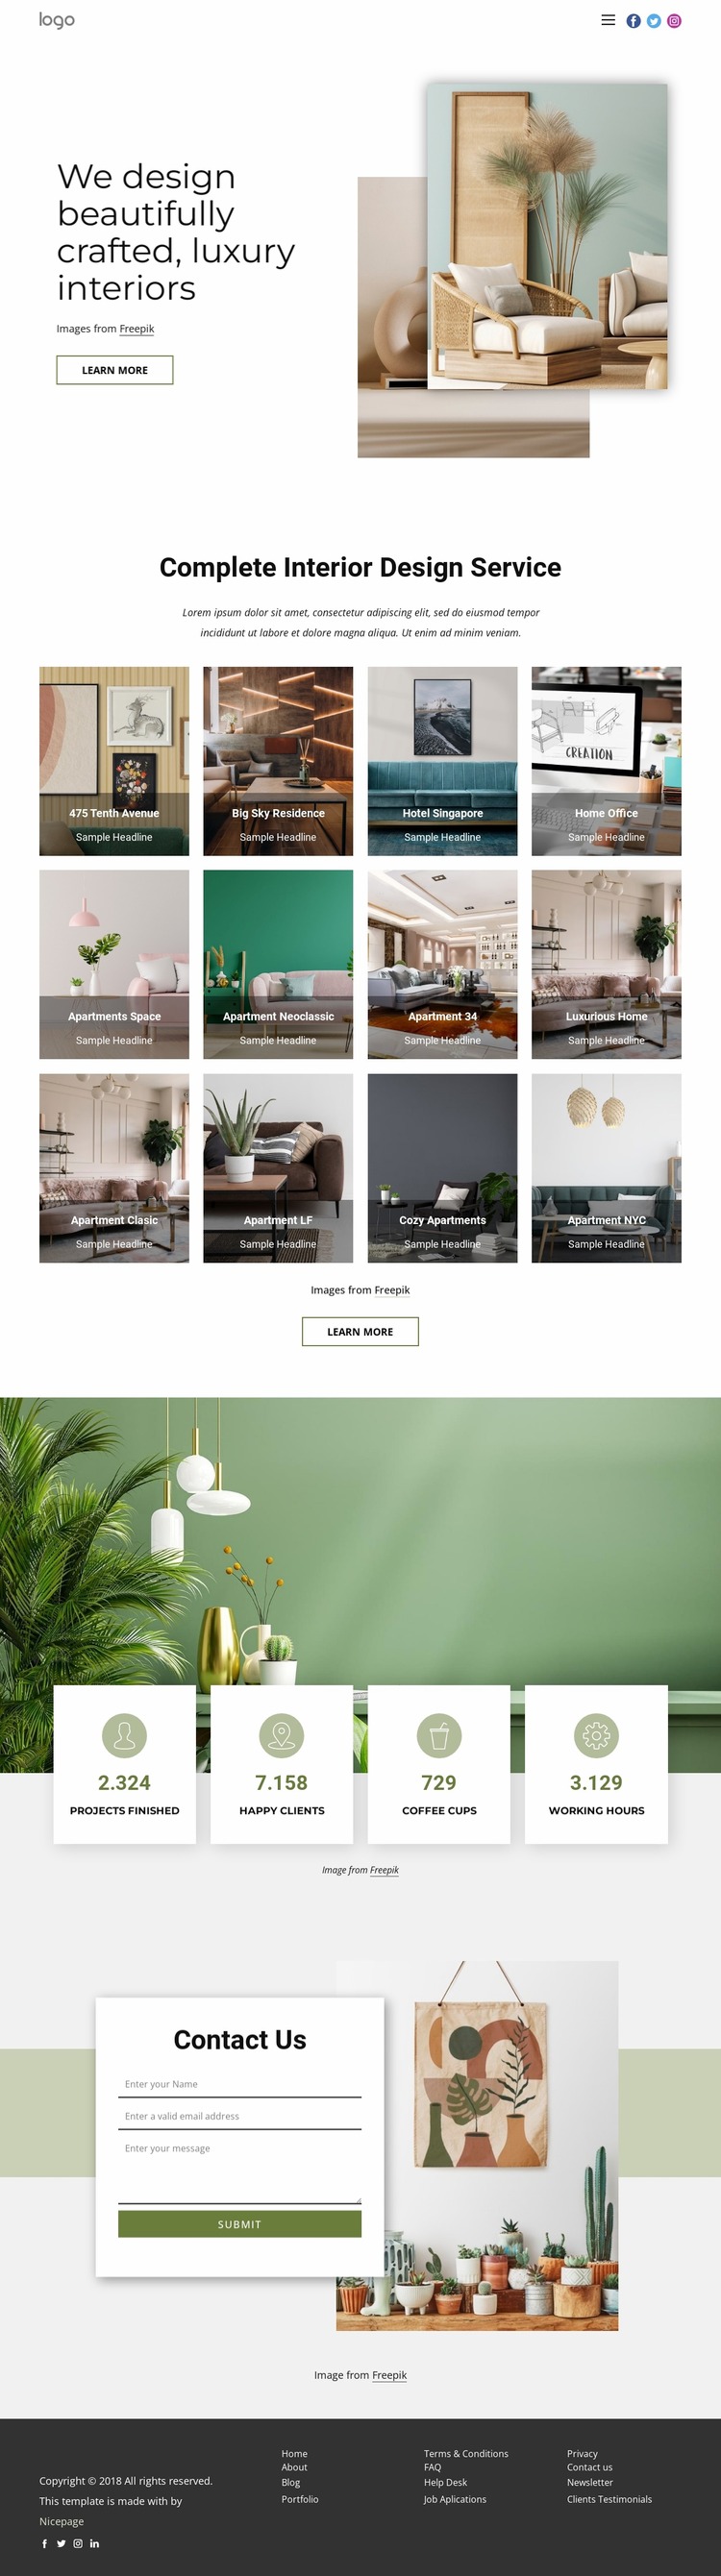 We design luxury interiors WordPress Website Builder